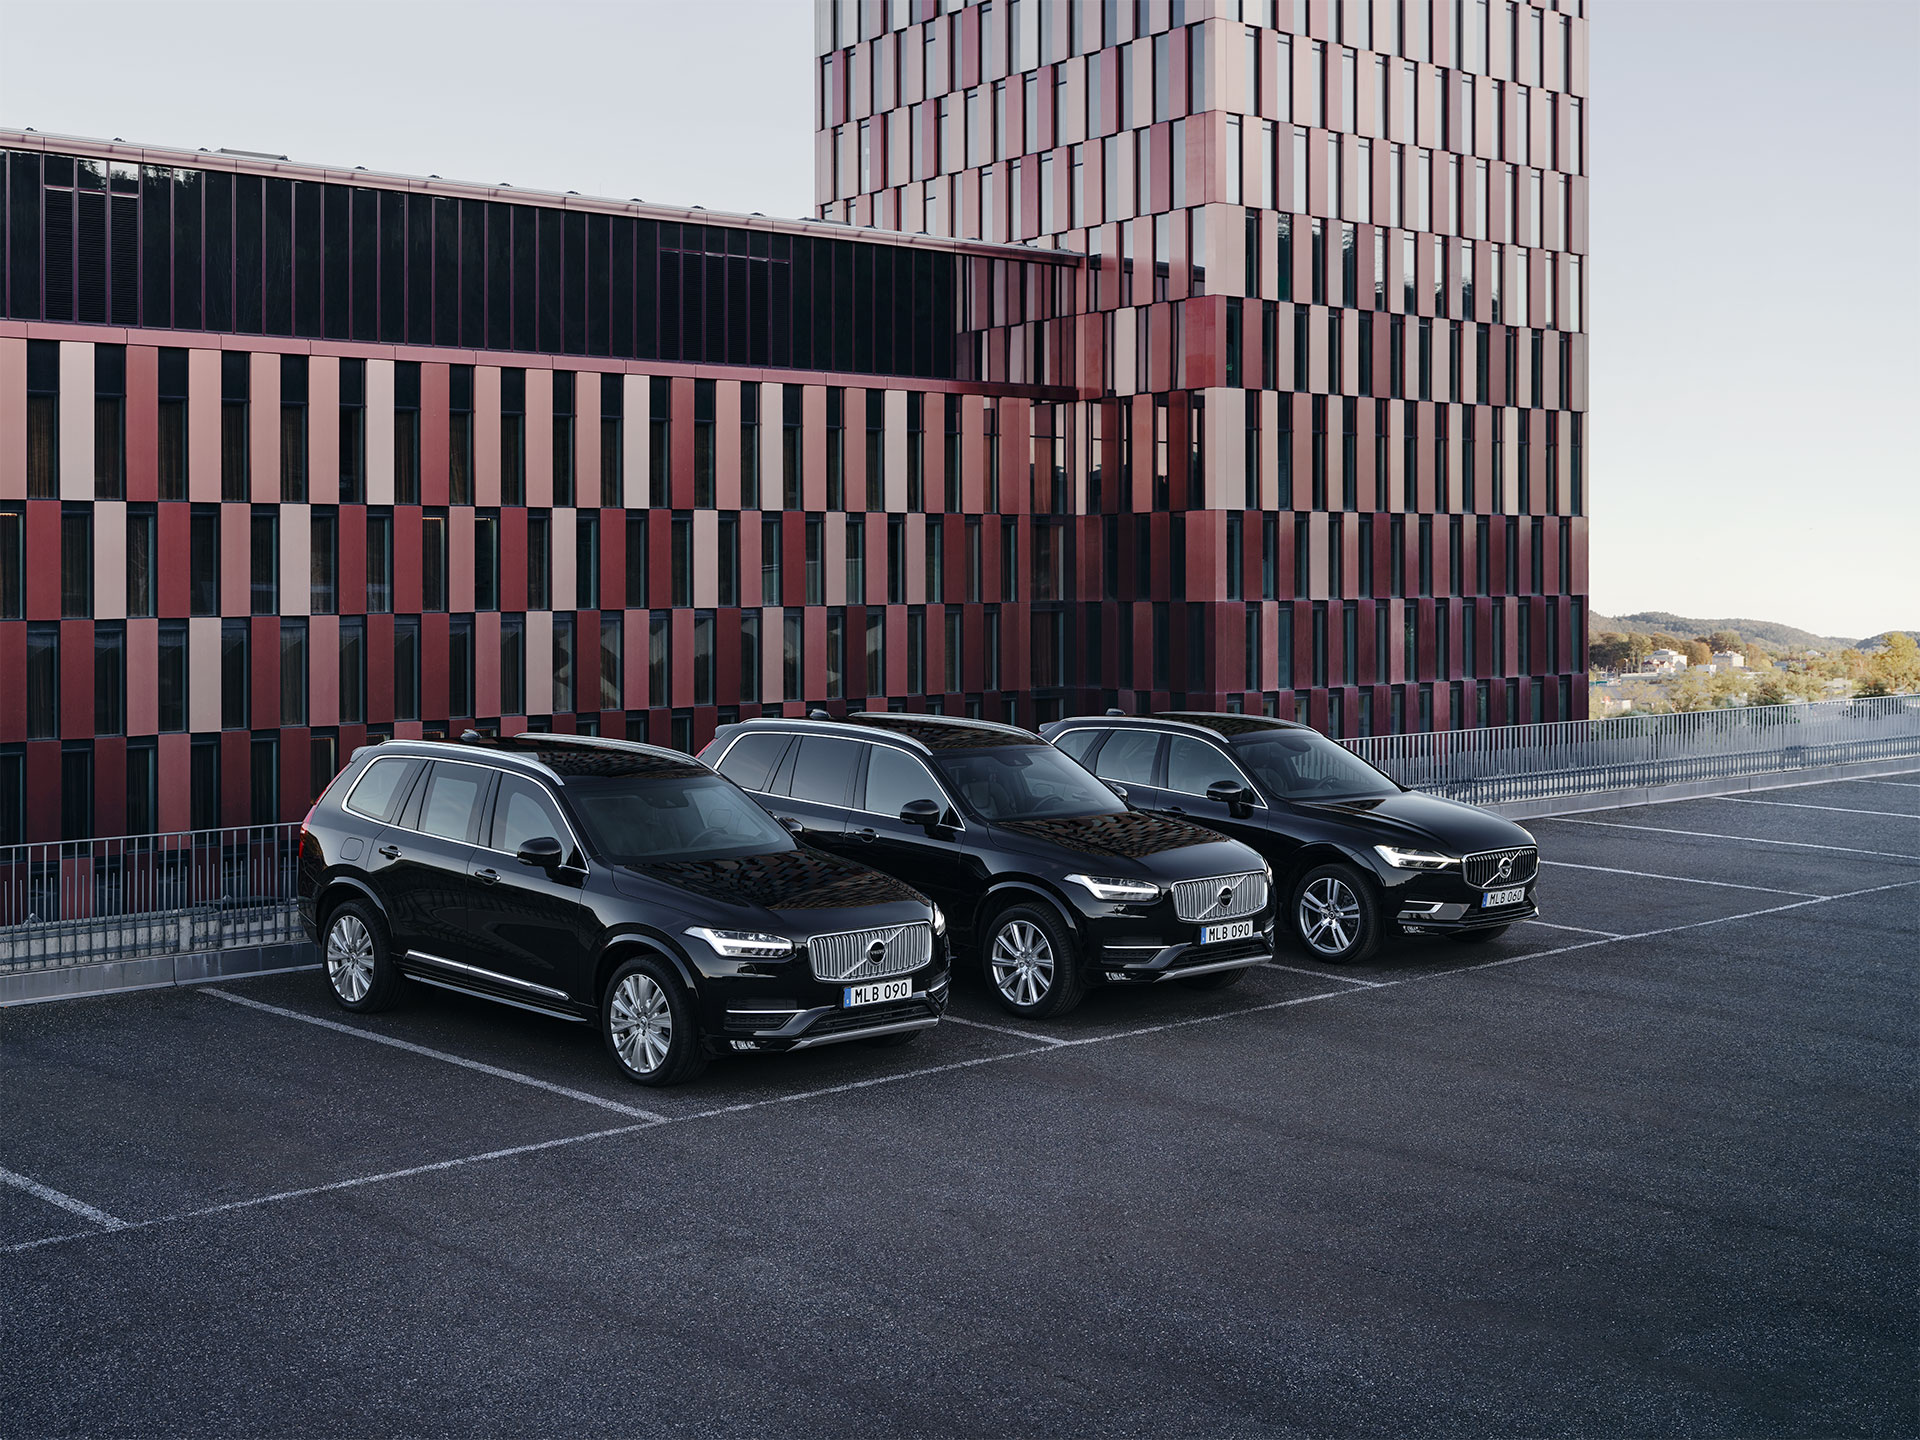 De zwaargepantserde Volvo XC90 en de lichtgepantserde XC90 en XC60 geparkeerd voor een overheidsgebouw.